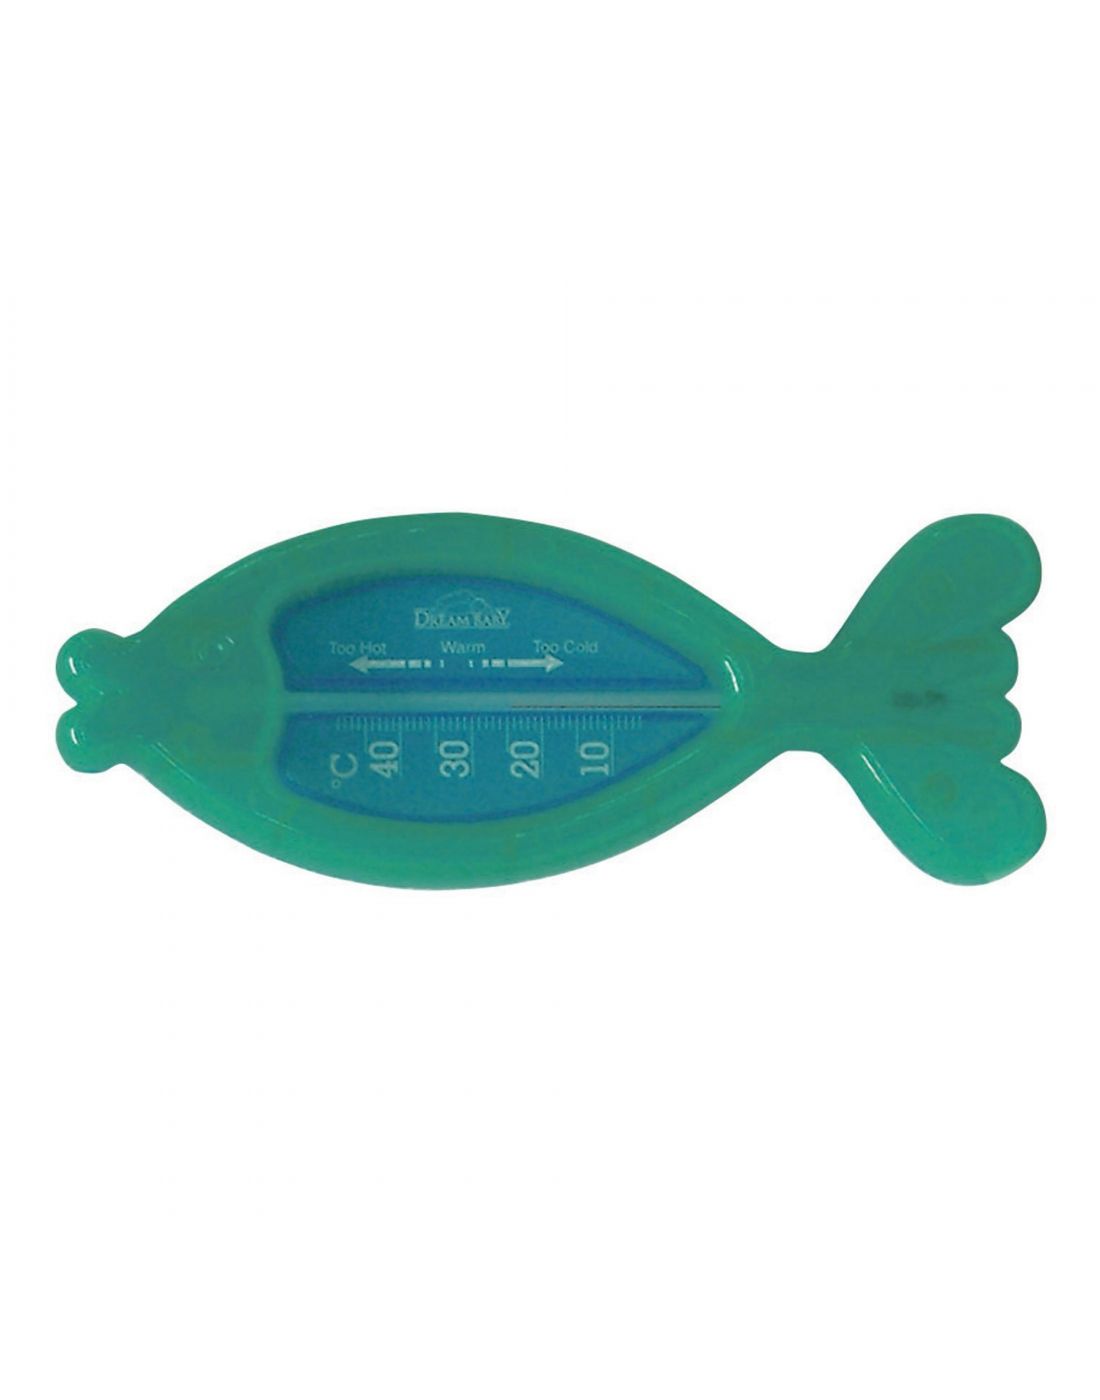 Παιδικό Θερμόμετρο Μπάνιου Fish DreamBaby